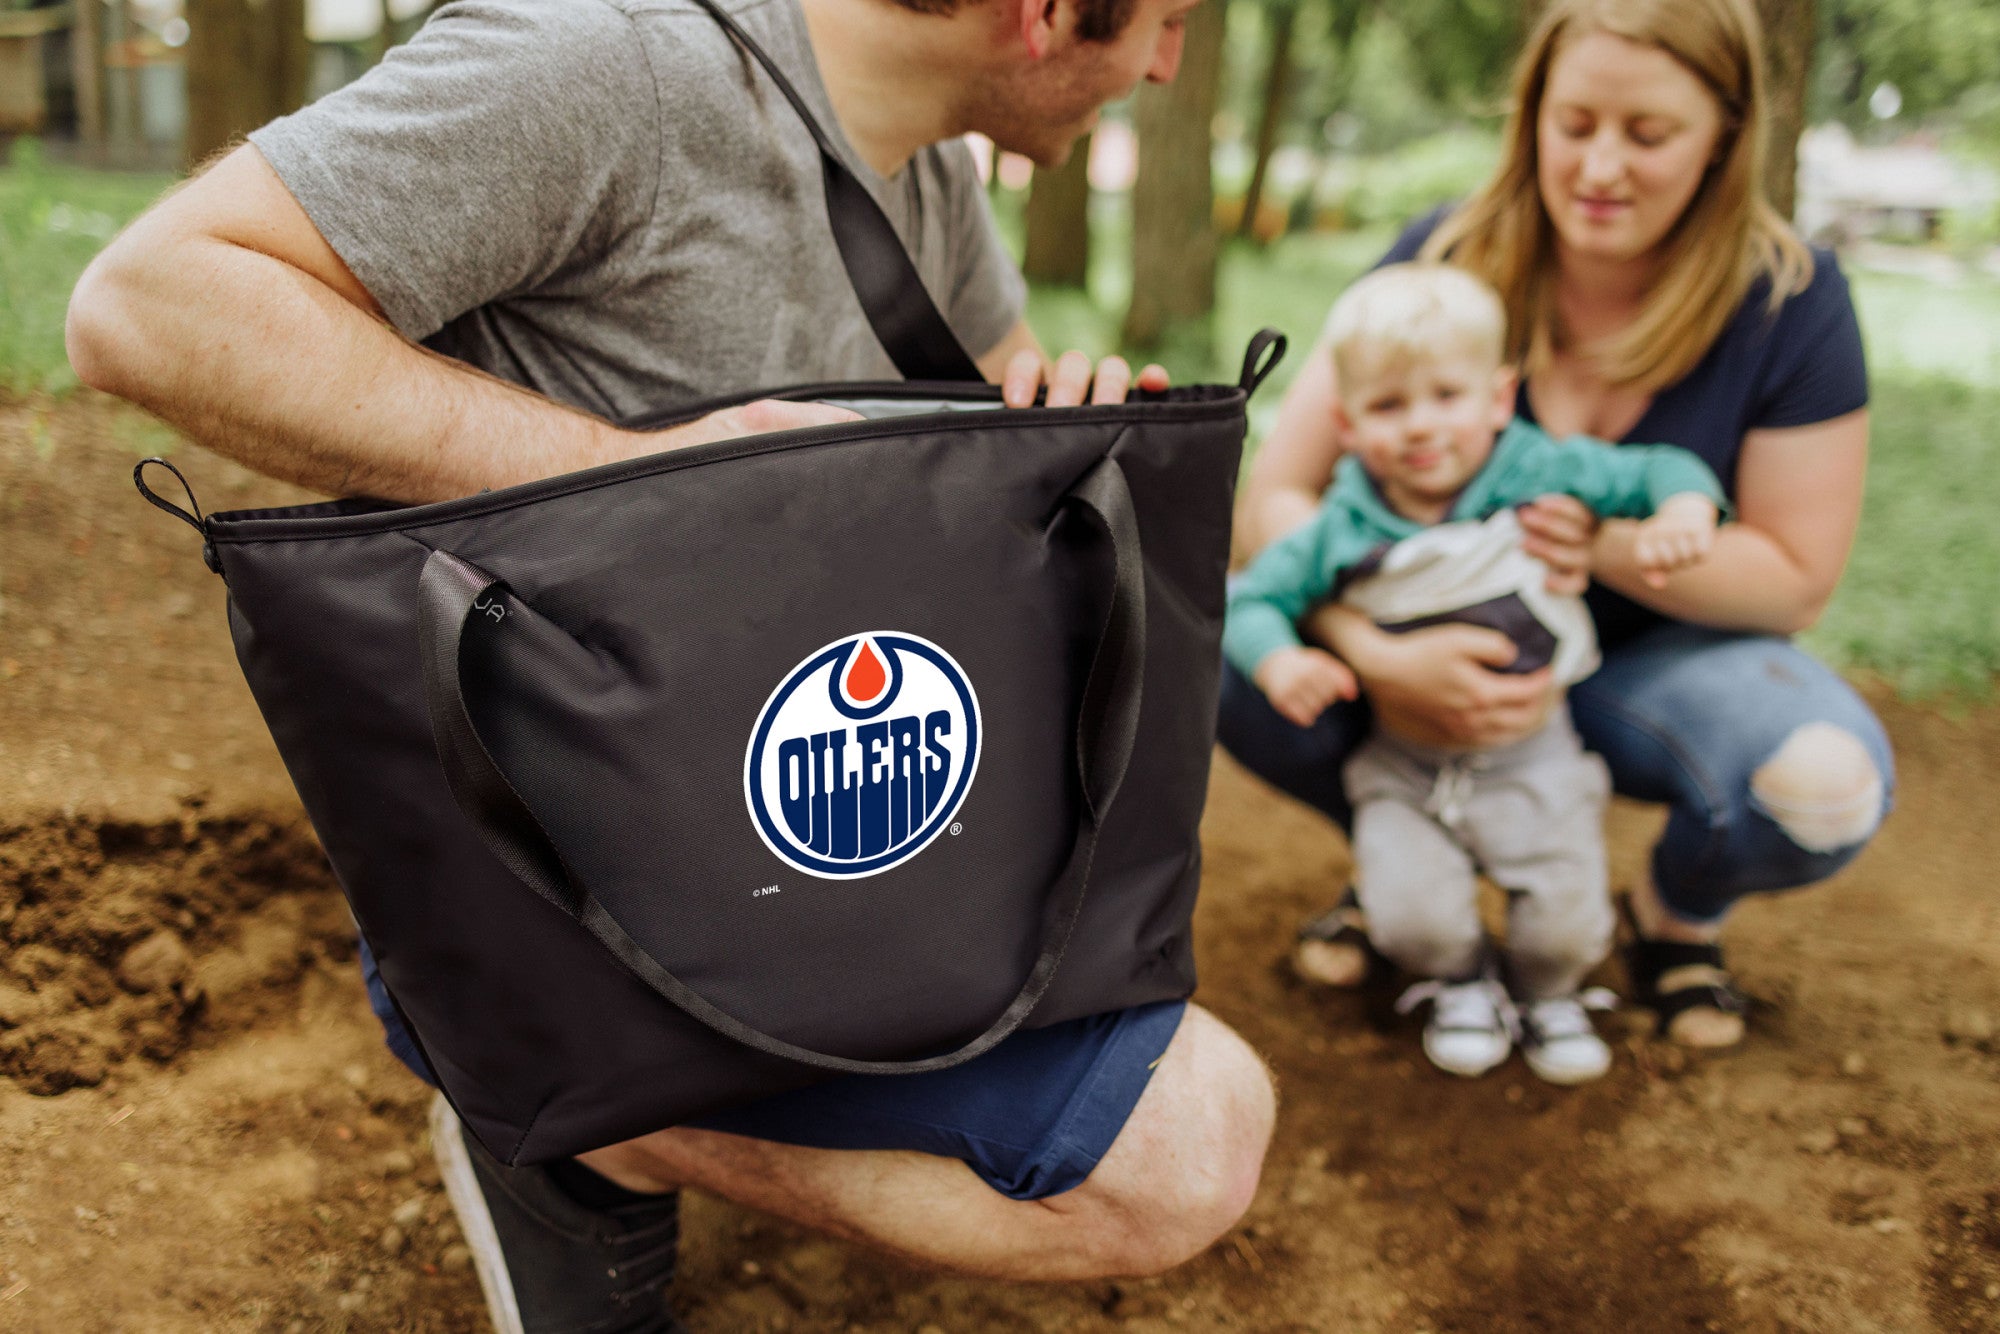 Edmonton Oilers - Tarana Cooler Tote Bag